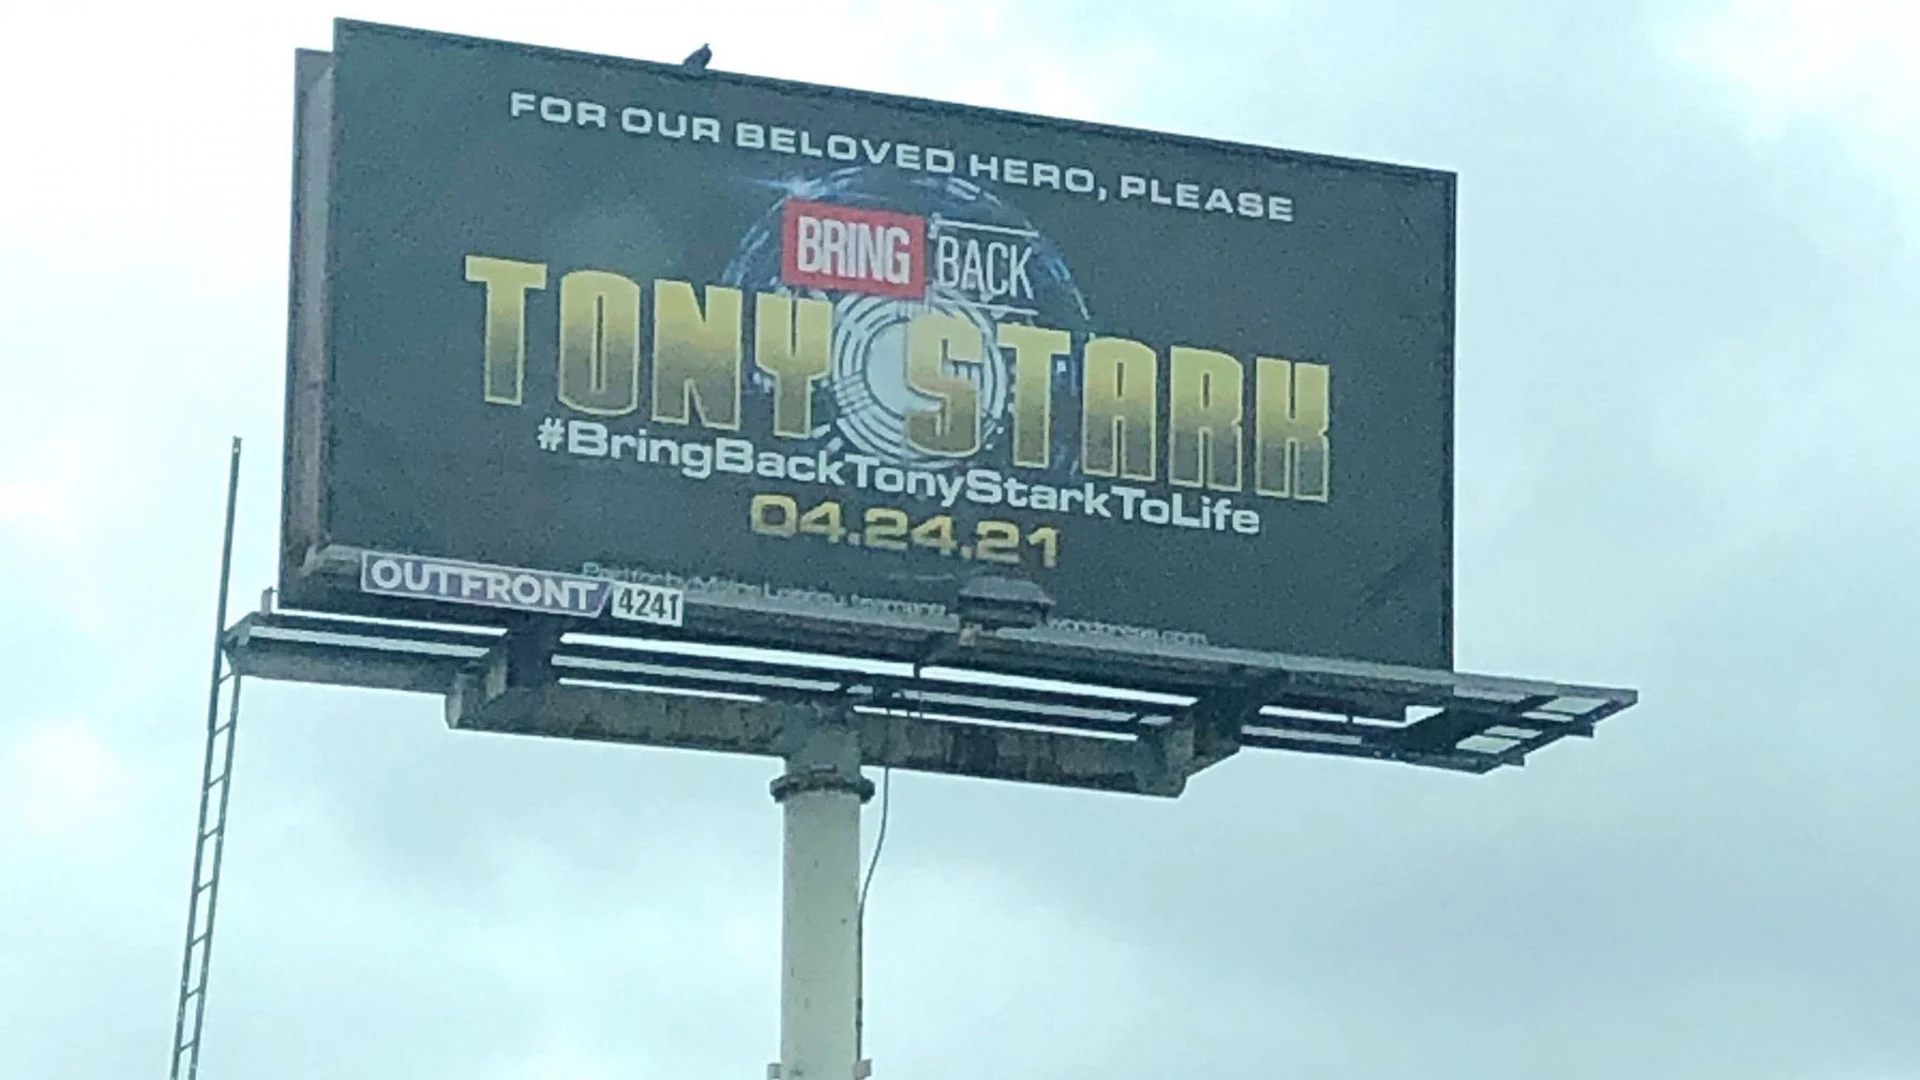 Фанаты Marvel через объявление попросили «воскресить» Тони Старка - фото 1